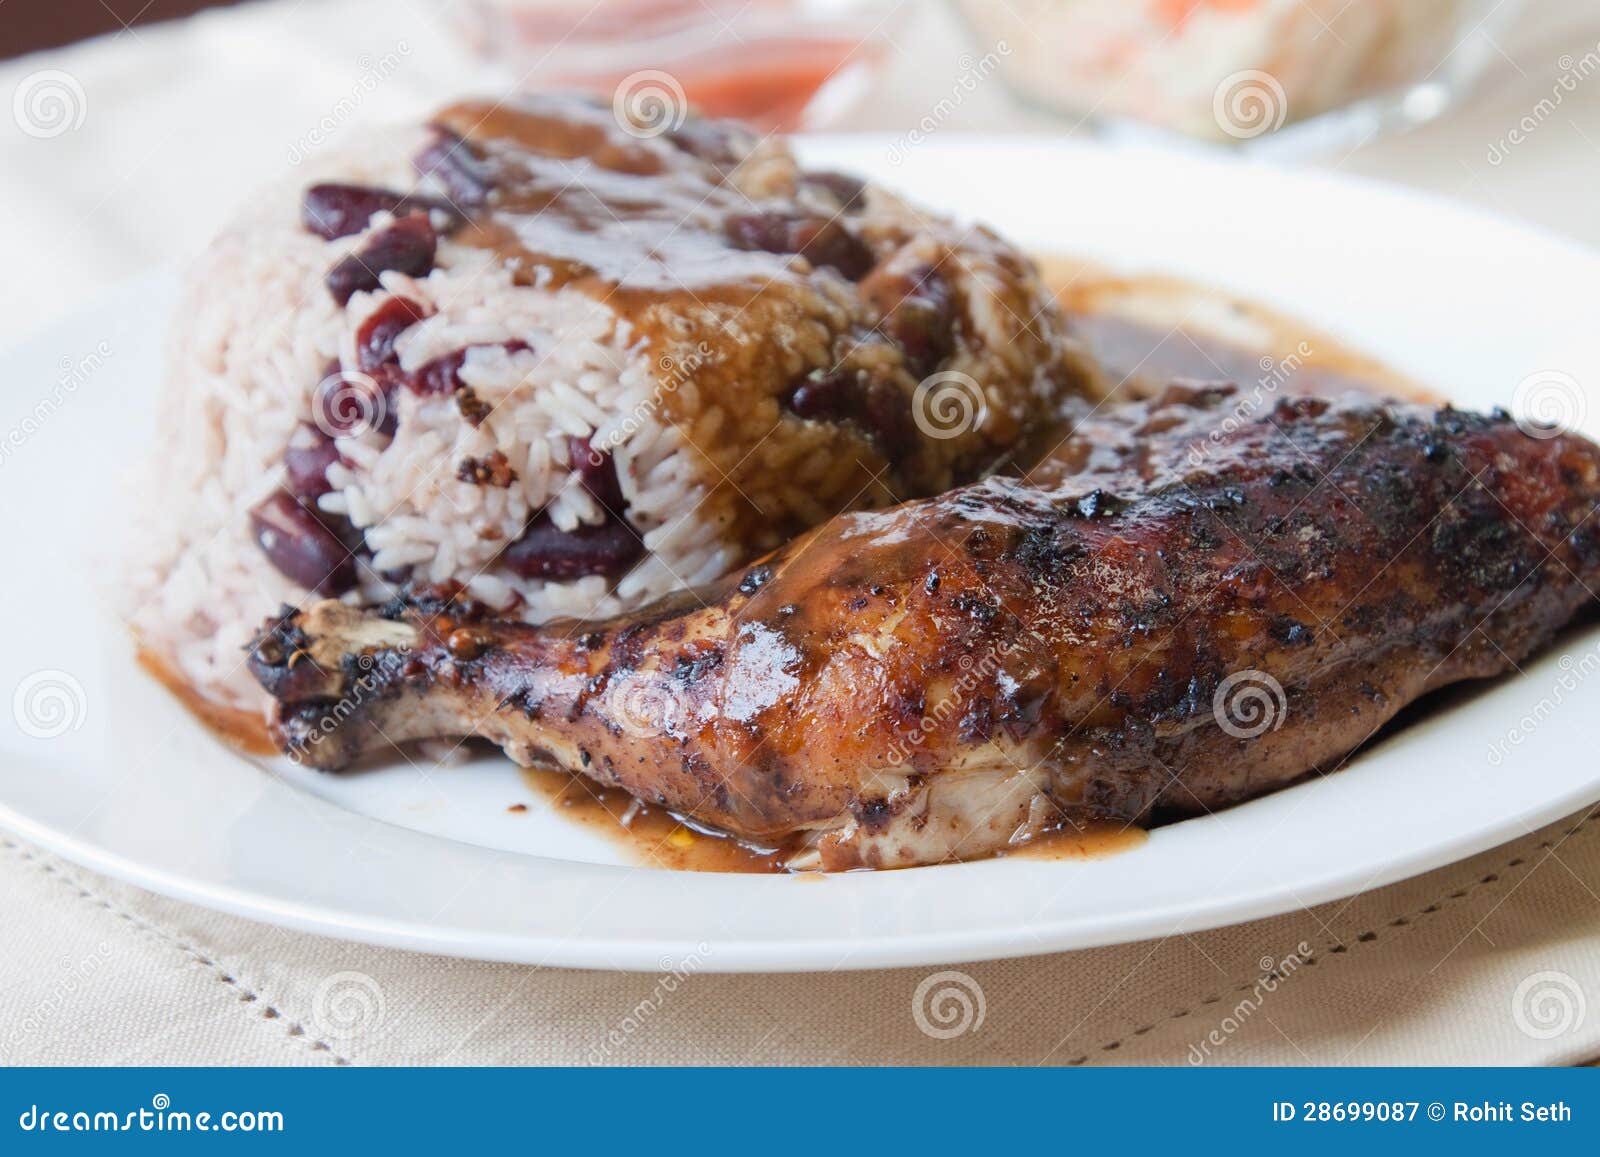 Цыпленок рывка с рисом - карибским типом. Карибский цыпленок рывка типа служил при рис смешанный с красными фасолями почки. Тарелка сопровоженная с coleslaw. Отмелый фокус на цыпленке.